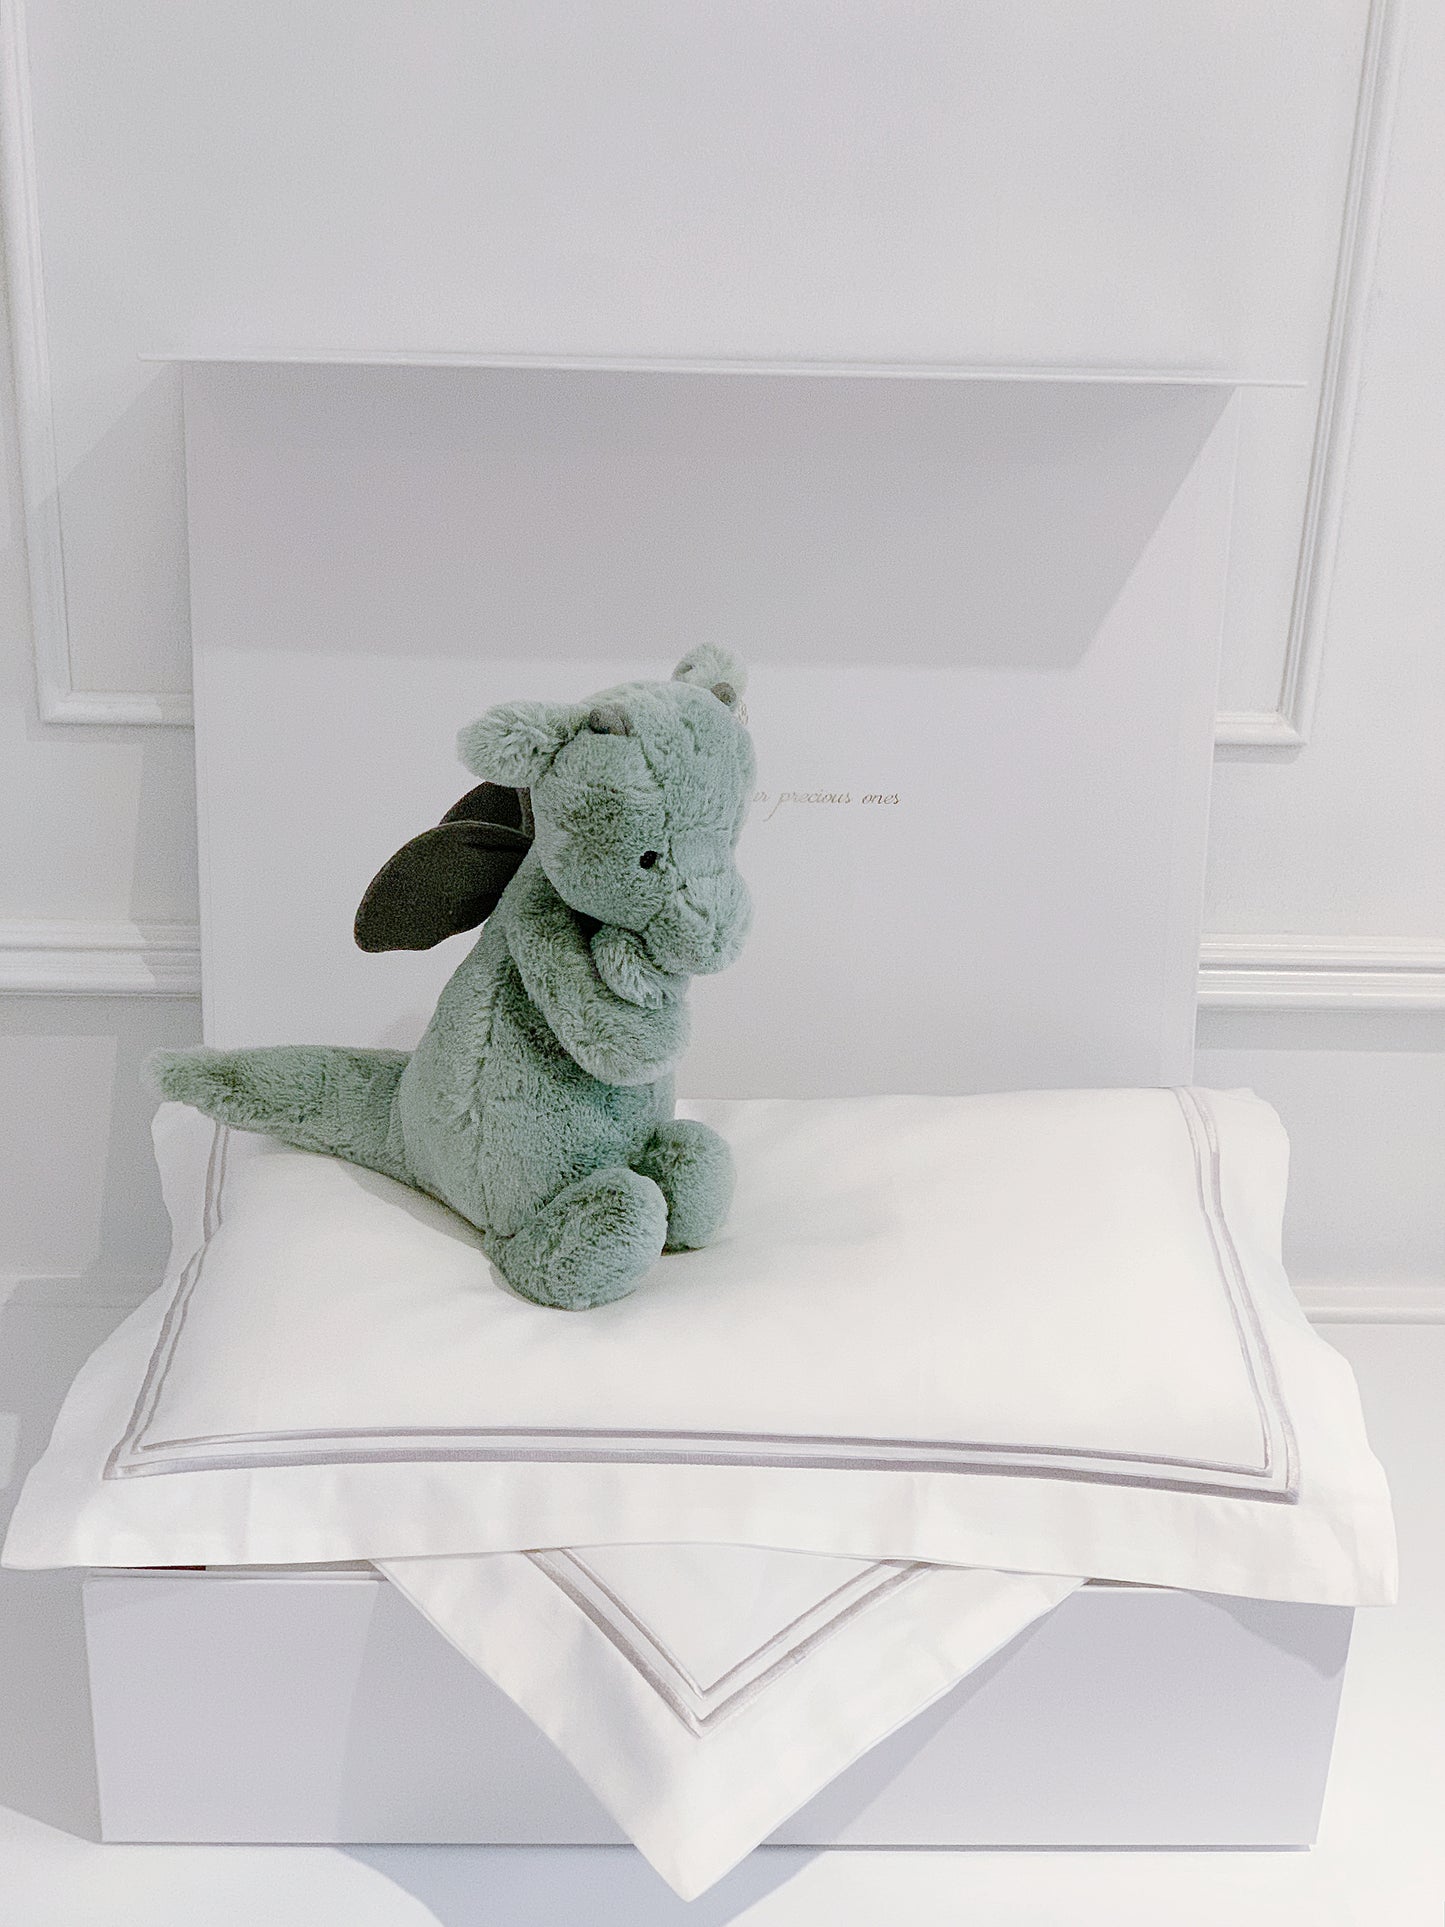 Bonjour Petit Pillow & Duvet Baby Gift Box - Platinum White